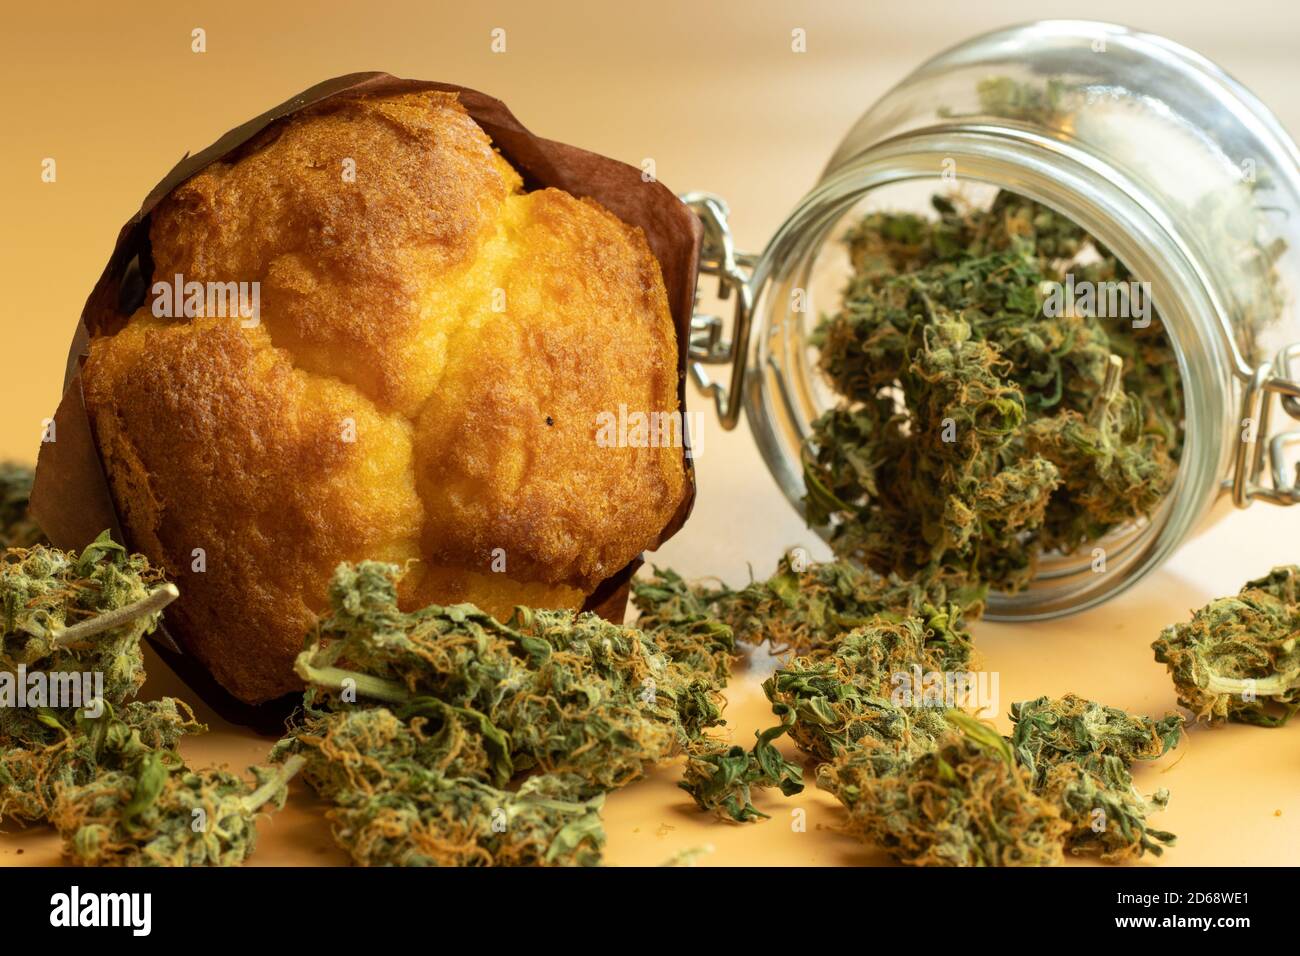 Muffin con germogli di cannabis. Prodotti alimentari marijuana. THC legale per uso medico o ricreativo Foto Stock